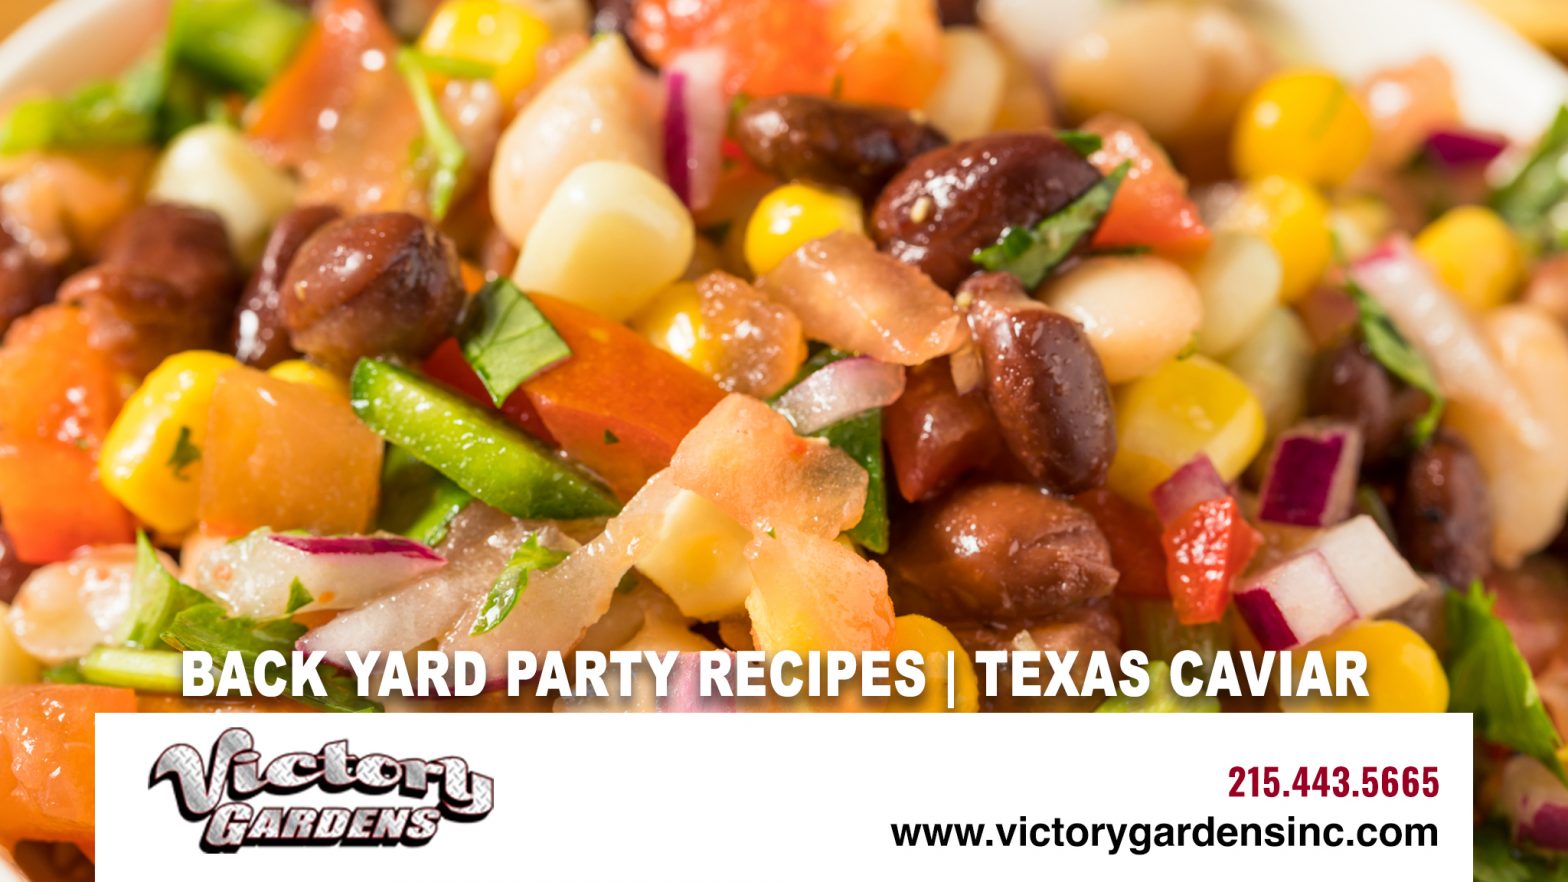 Back Yard Party Recipes | Texas Caviar